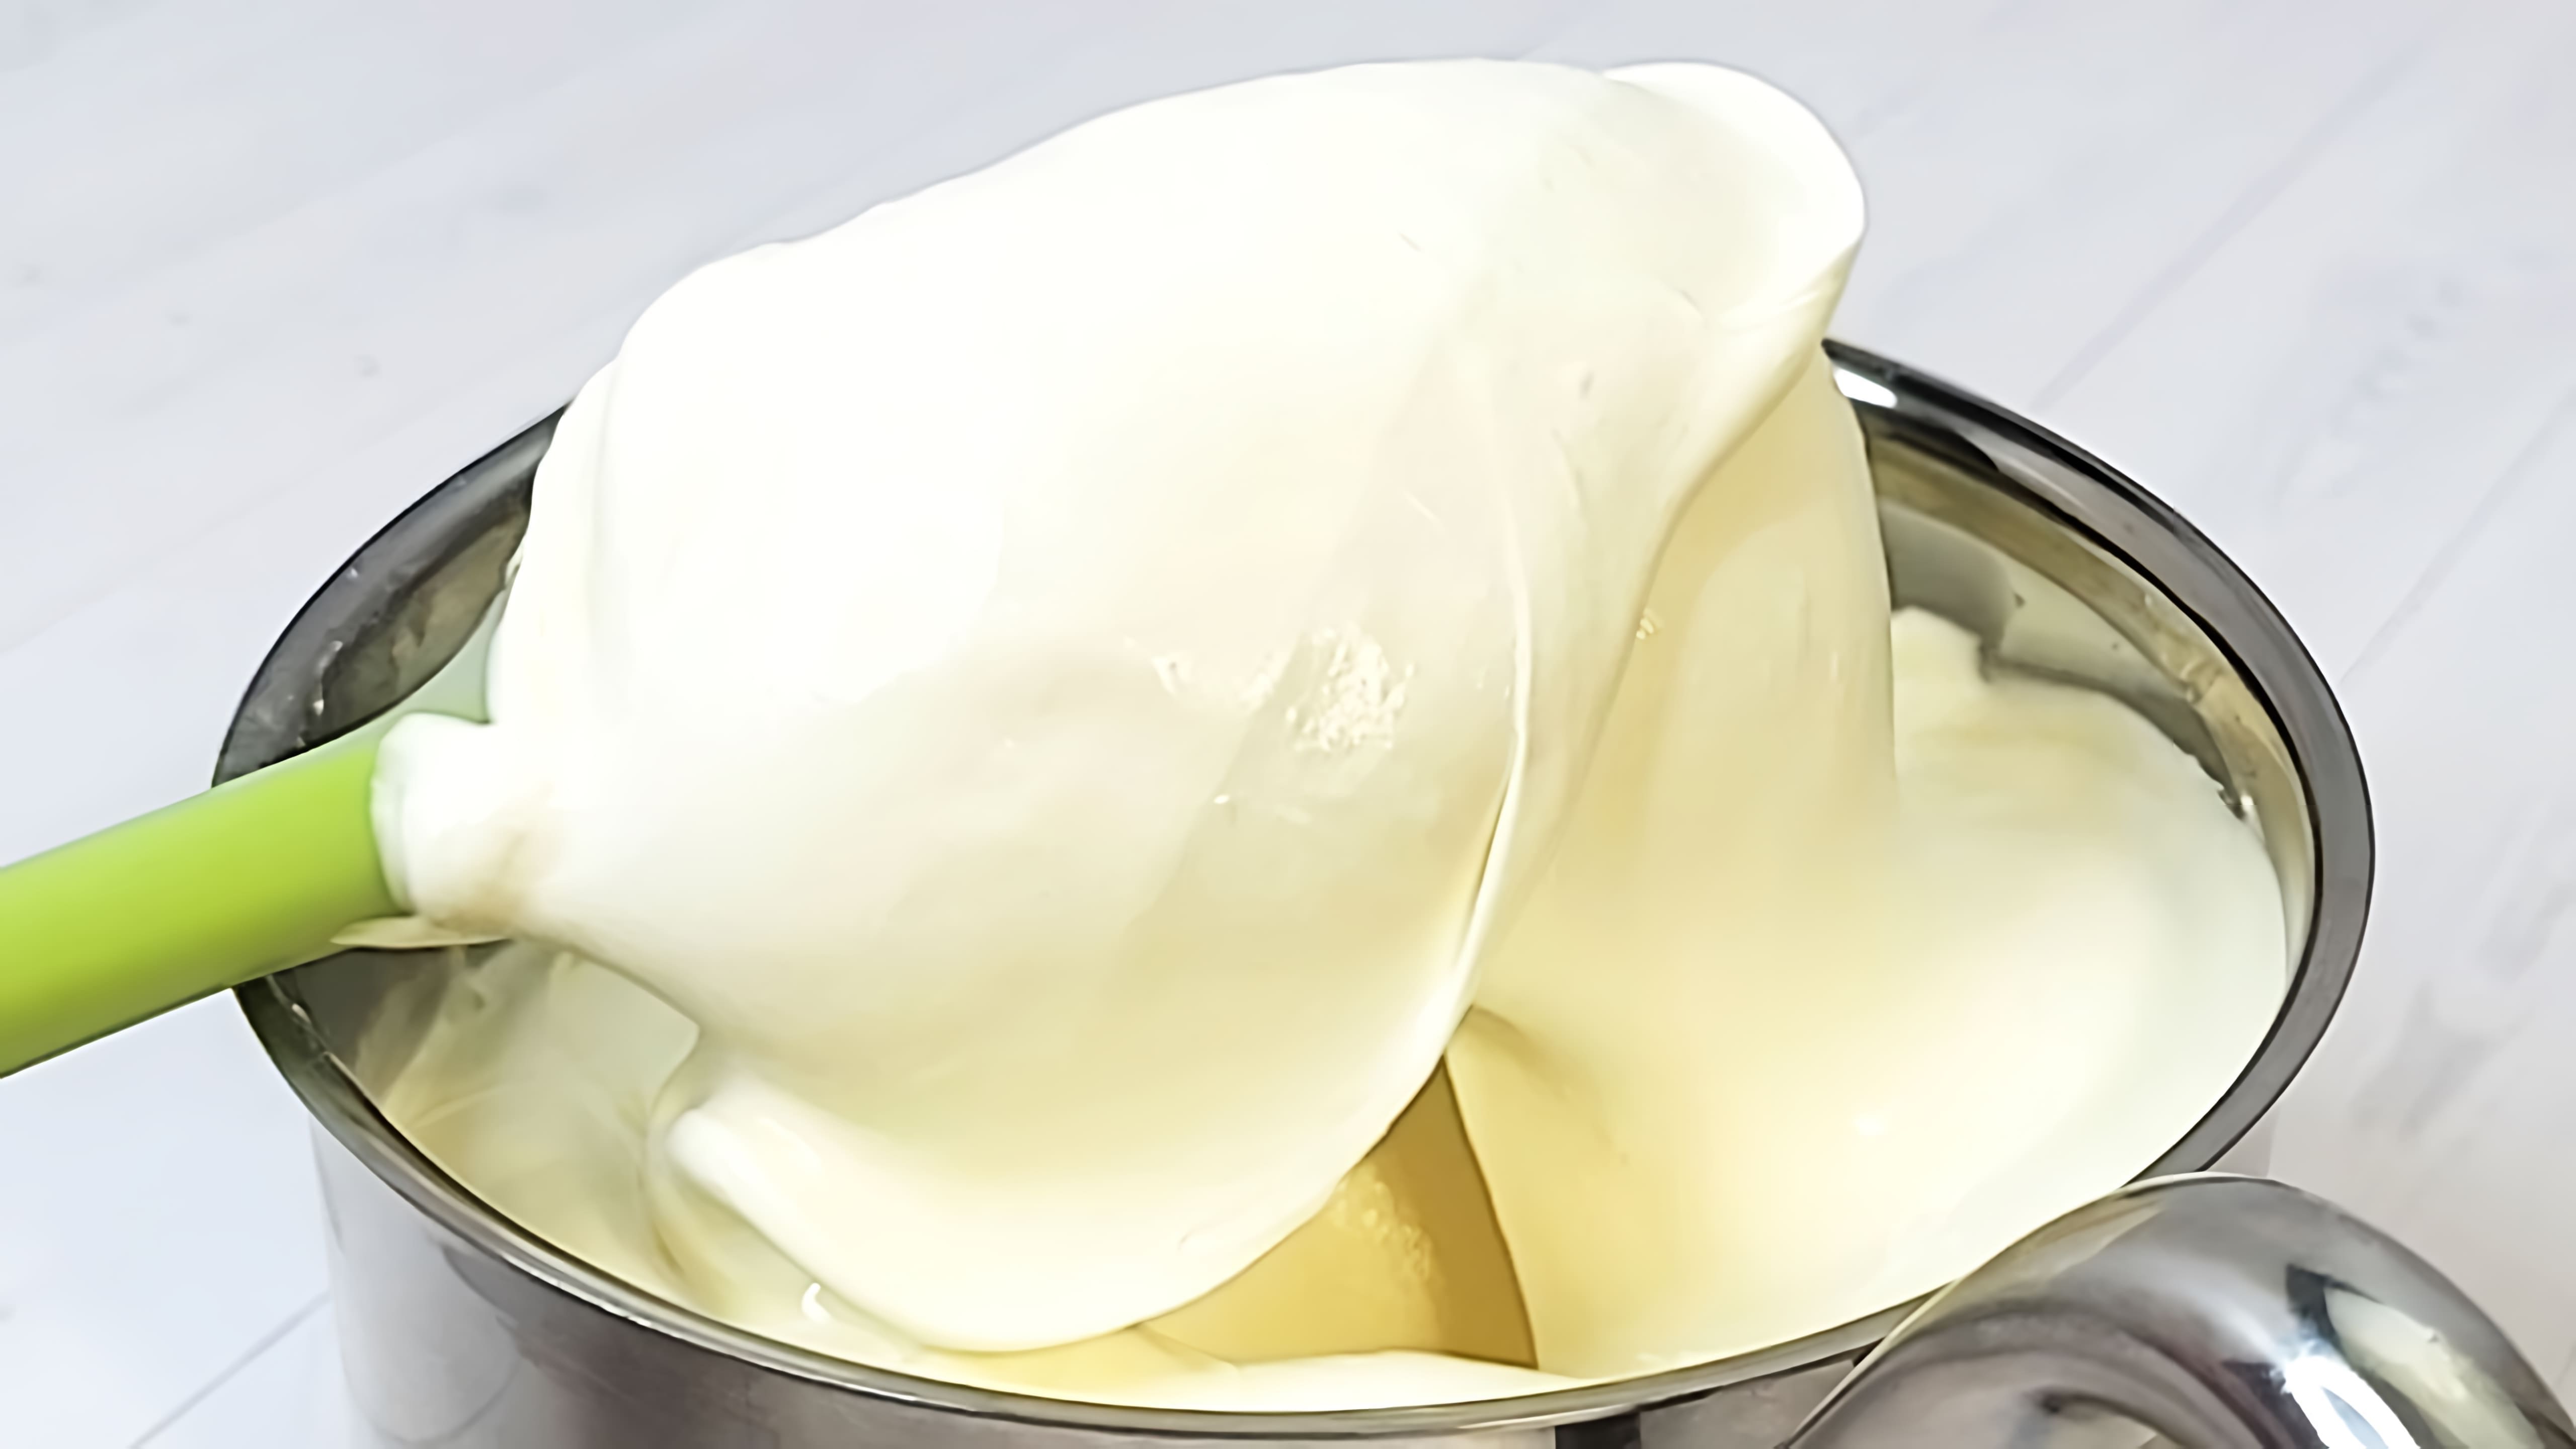 В этом видео демонстрируется рецепт потрясающе вкусного крема для прослойки торта